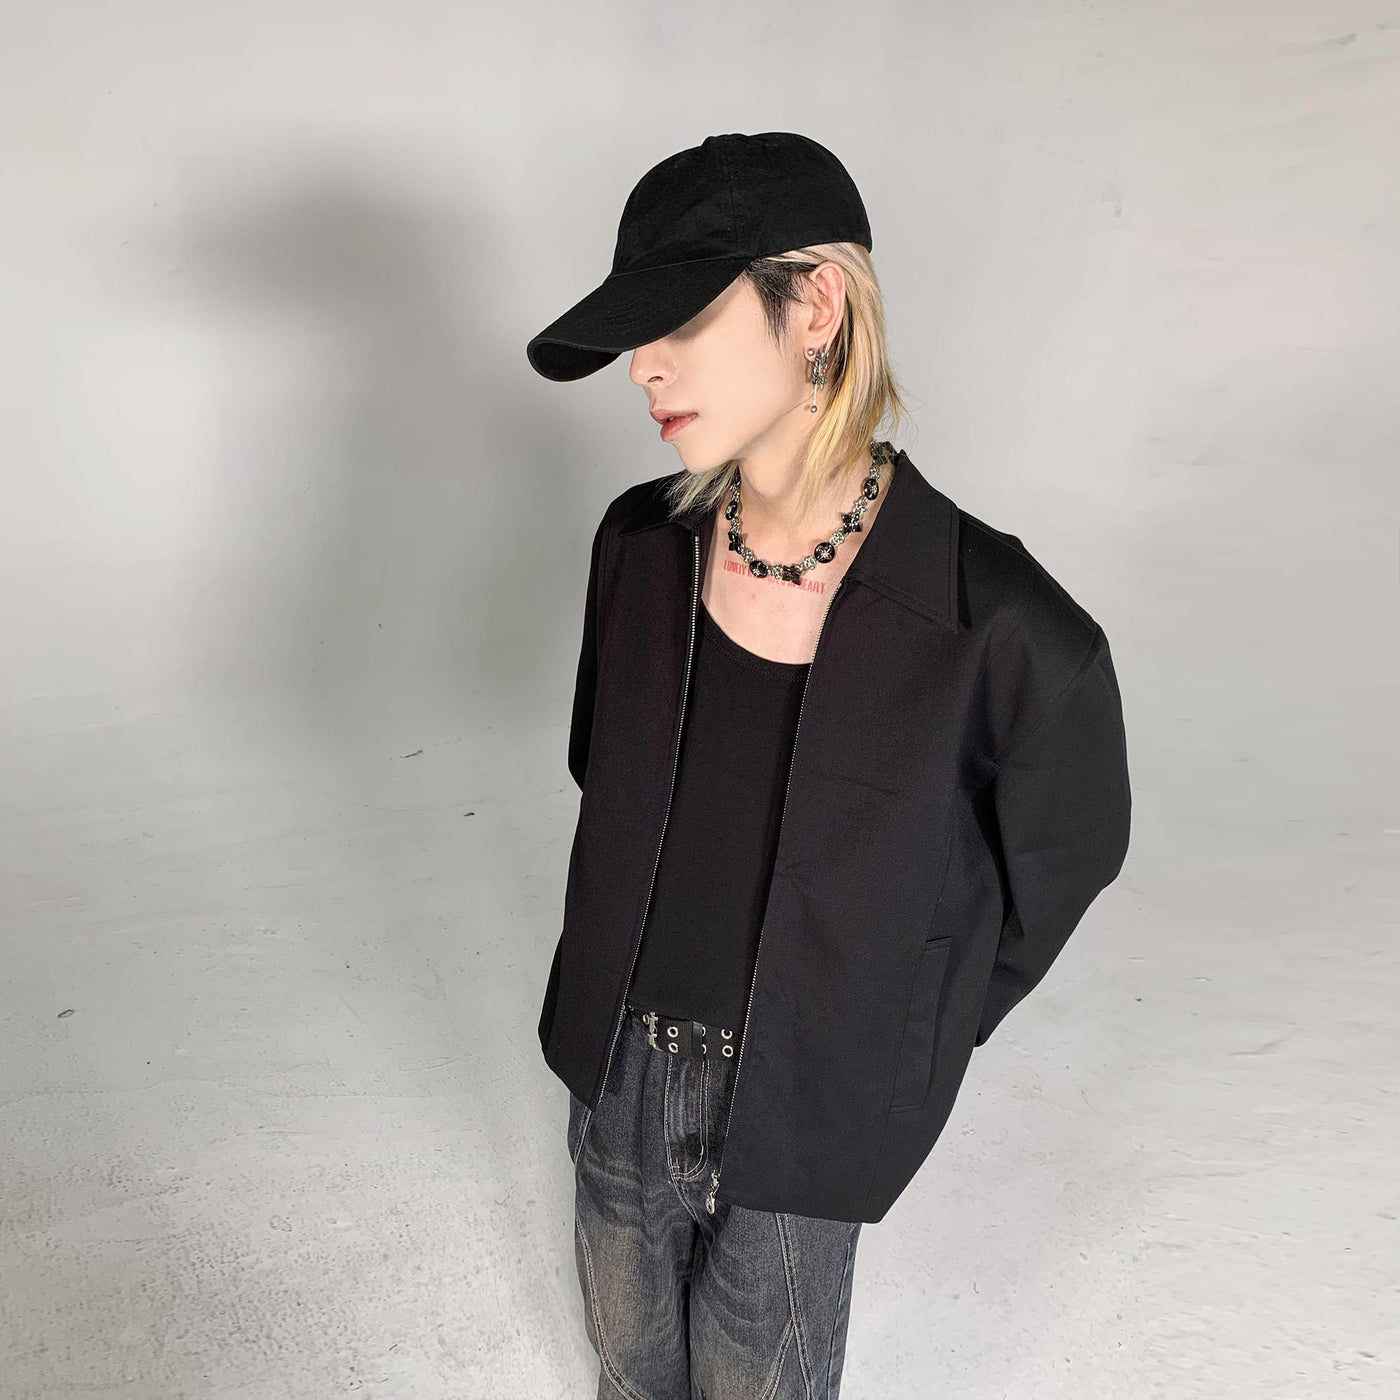 Ash Dark Solid Color Wide Shoulder Zip-Up Jacket Korean Street Fashion Jacket By Ash Dark Shop Online at OH Vault